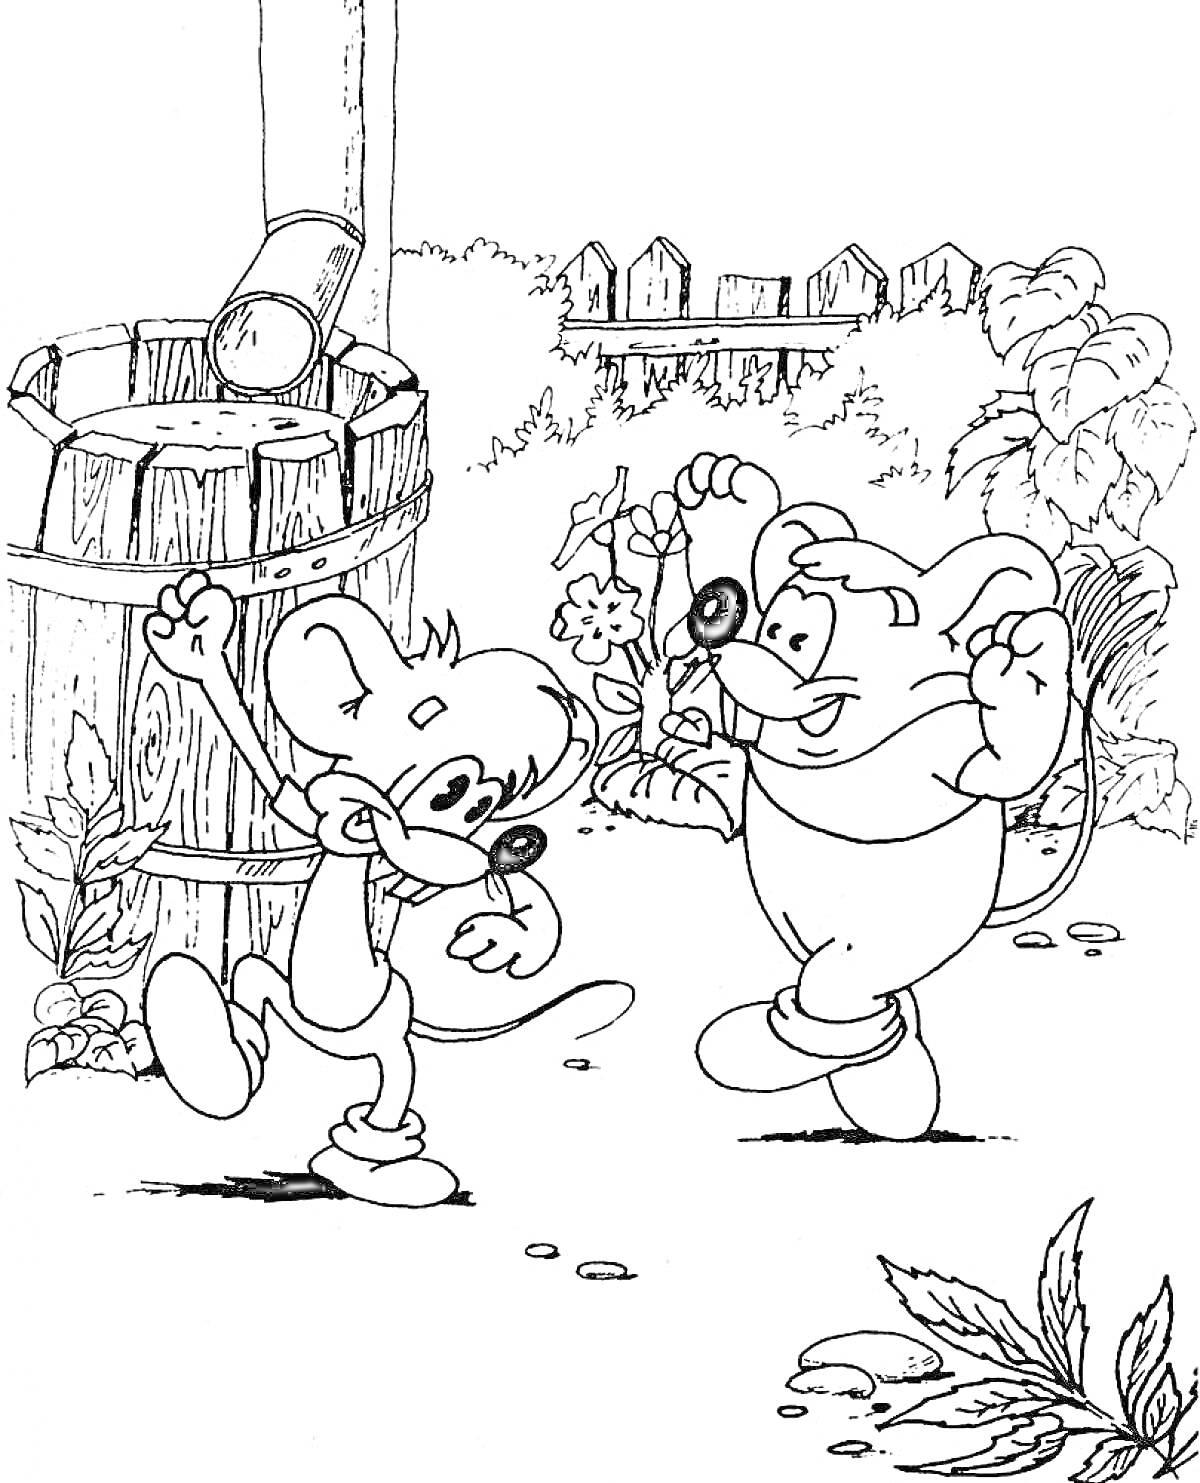 Кот Леопольд у колодца с мышами, цветами и забором на фоне